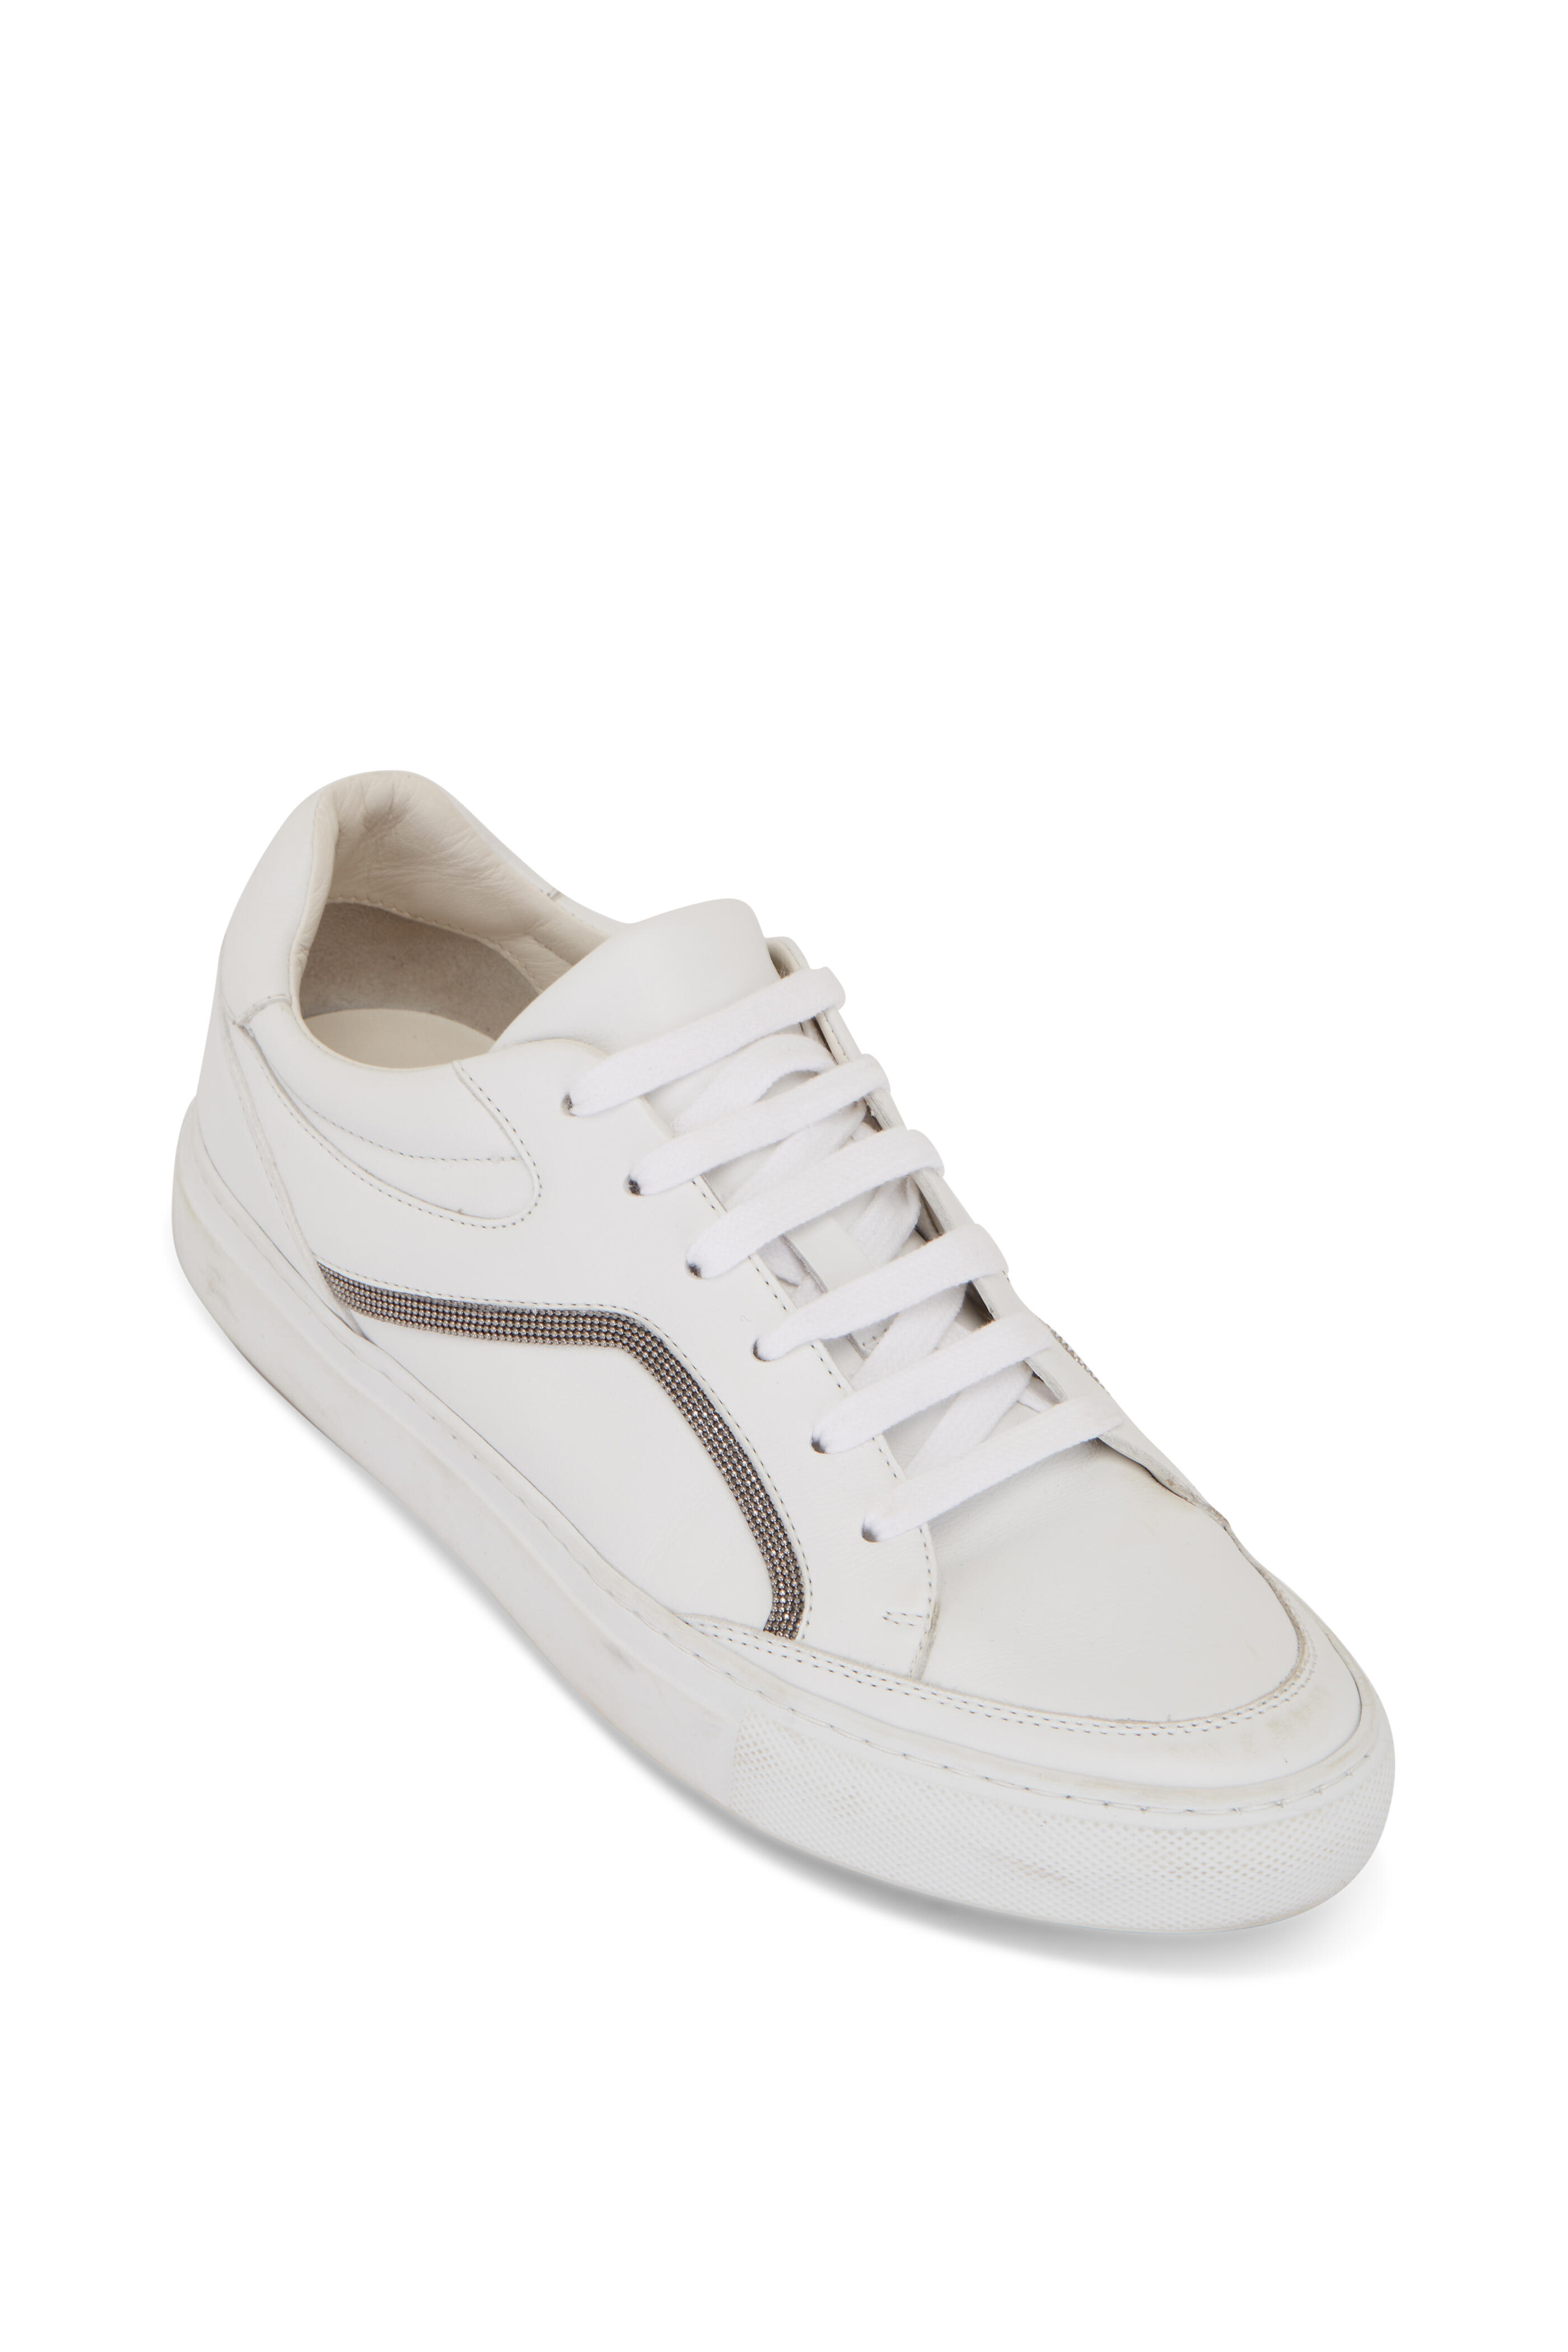 Brunello Cucinelli - White Leather Monili Detail Sneaker